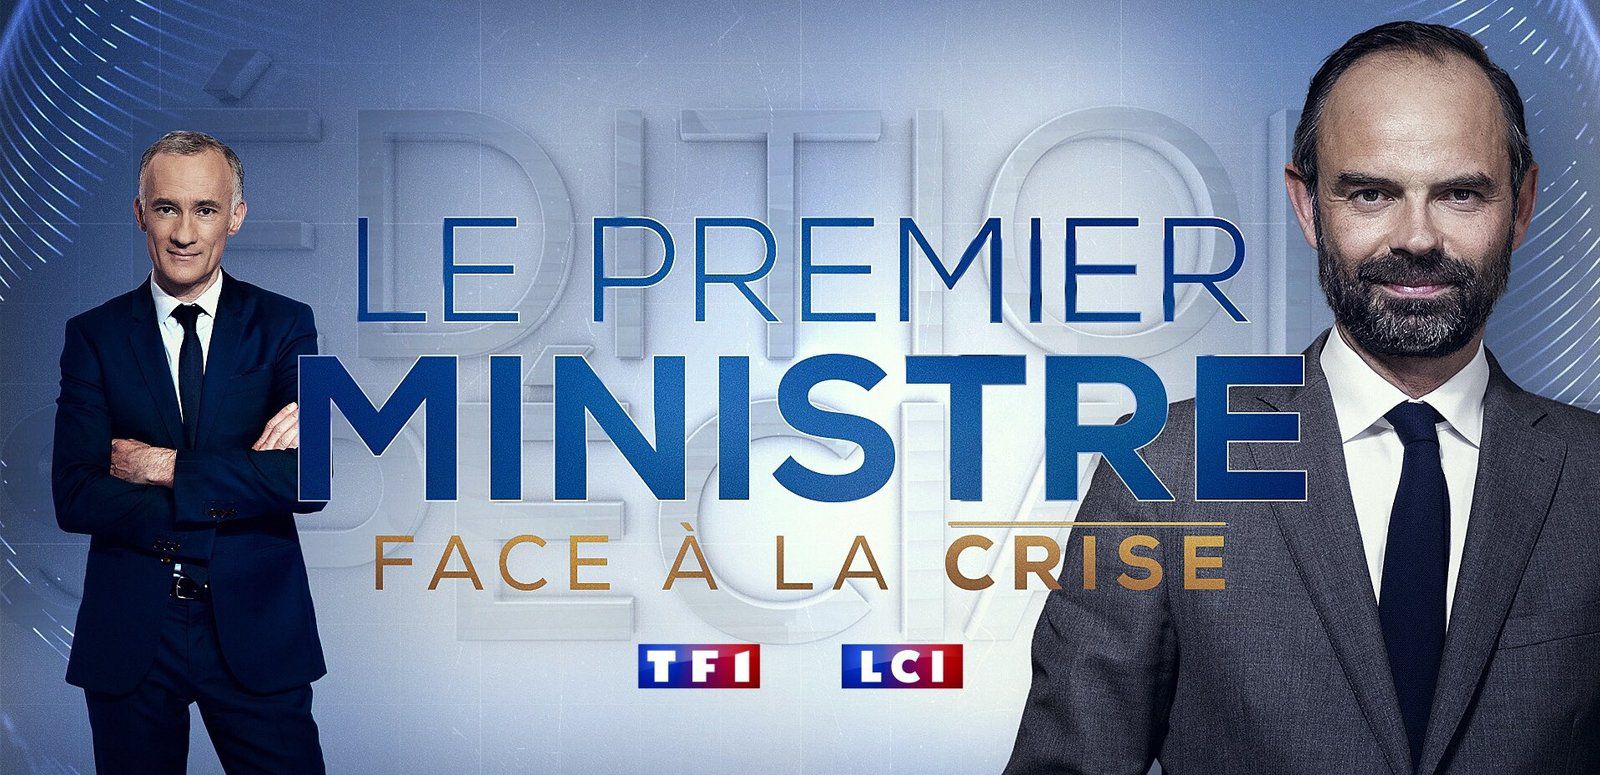 EPIDEMIE DE CORONAVIRUS : Evènement, le Premier Ministre, Edouard Philippe face à la crise, jeudi 02/04/20 à 20h40 en direct sur TF1